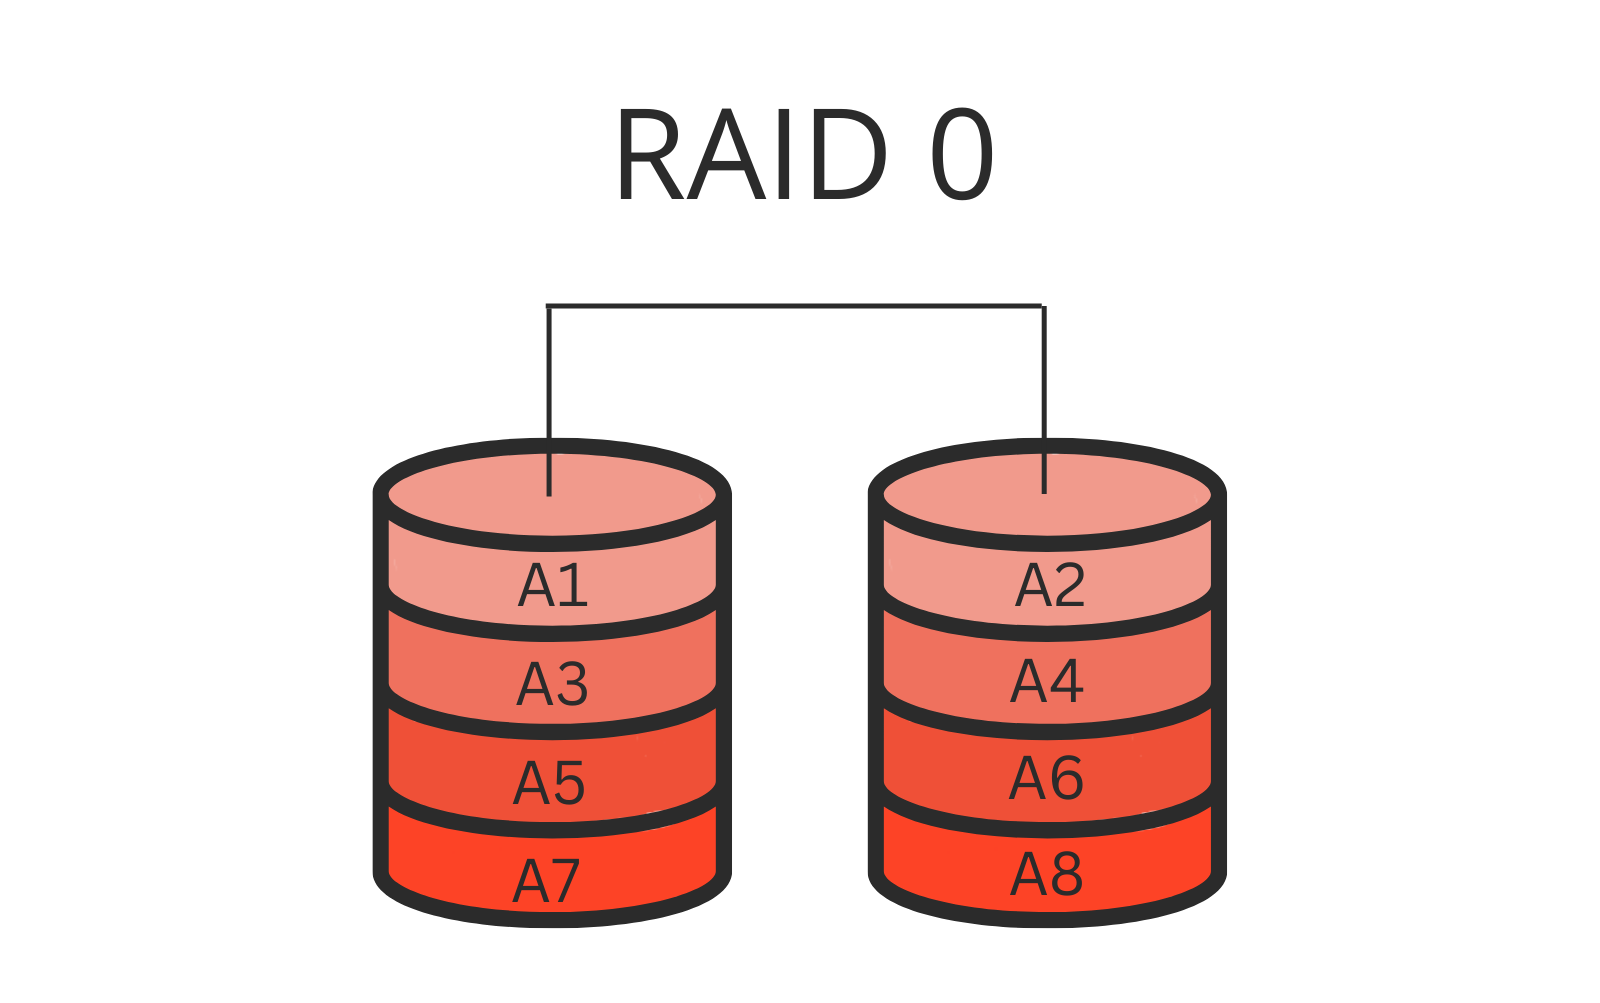 RAID 0 - Striping